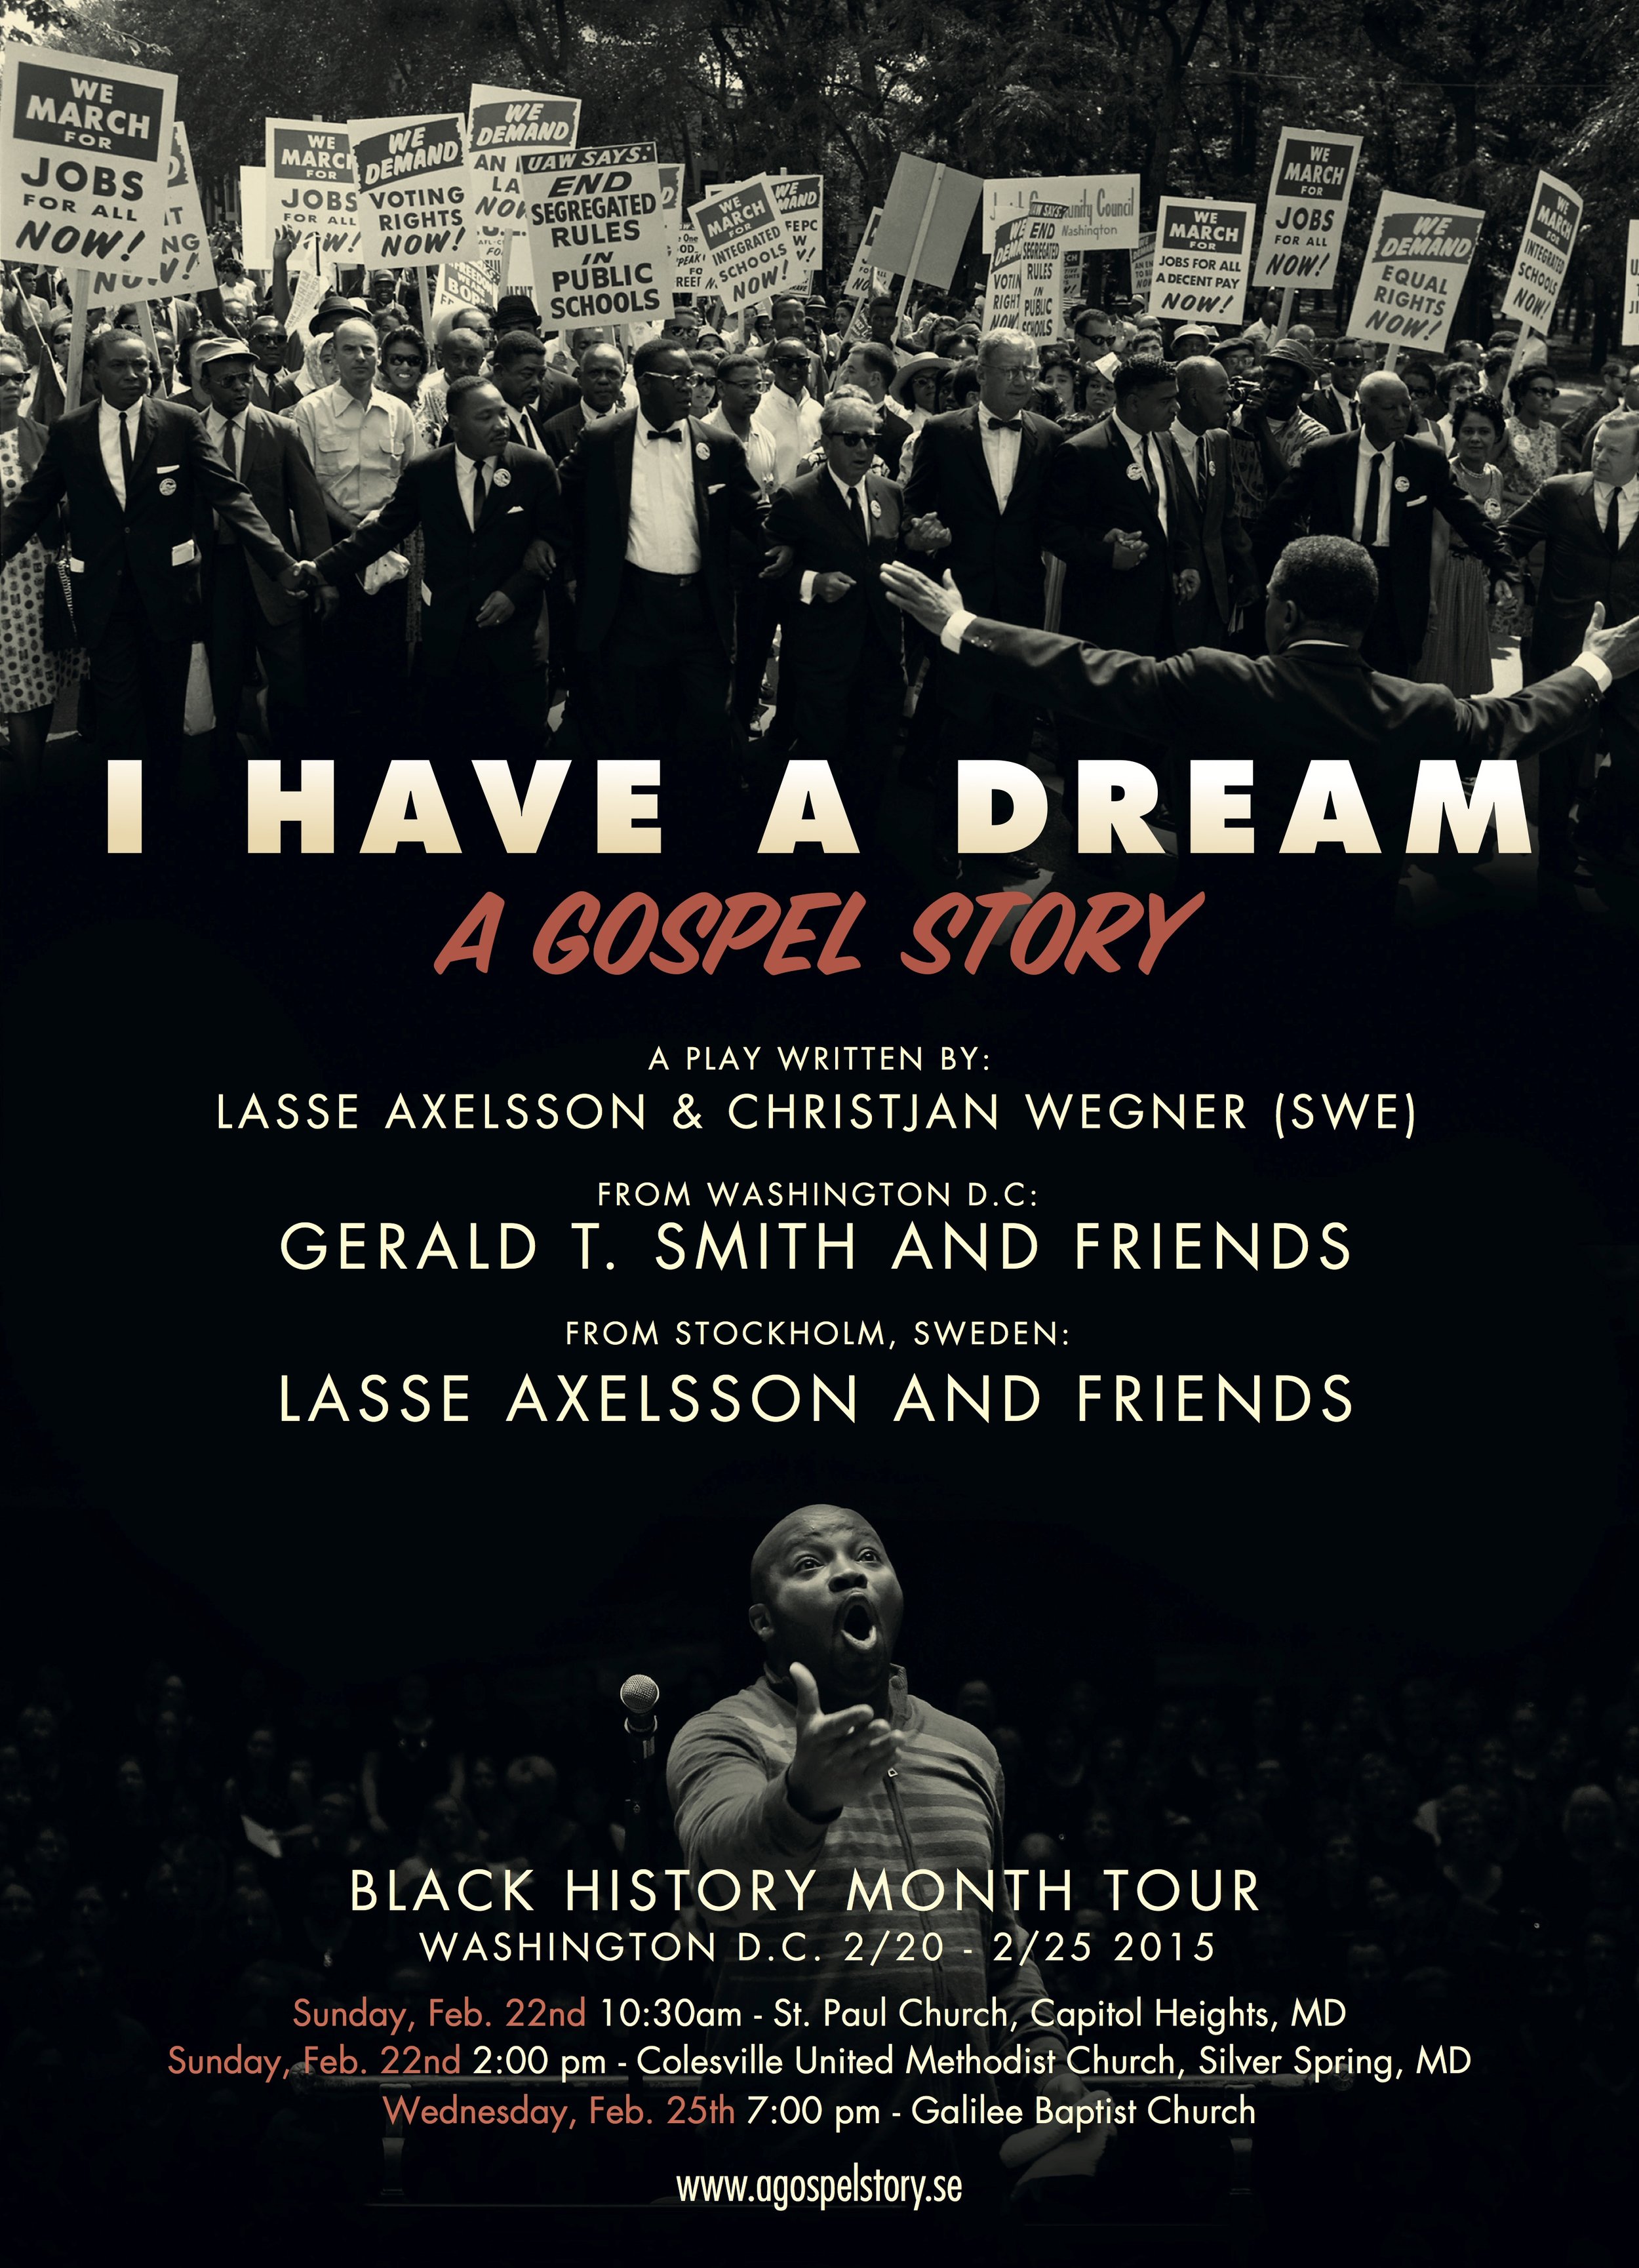   I Have A Dream   A Gospel Story  Uppdrag: Bokning, Ljud, Ljus, Lokal, PR, Turnéplanering År: 2014 